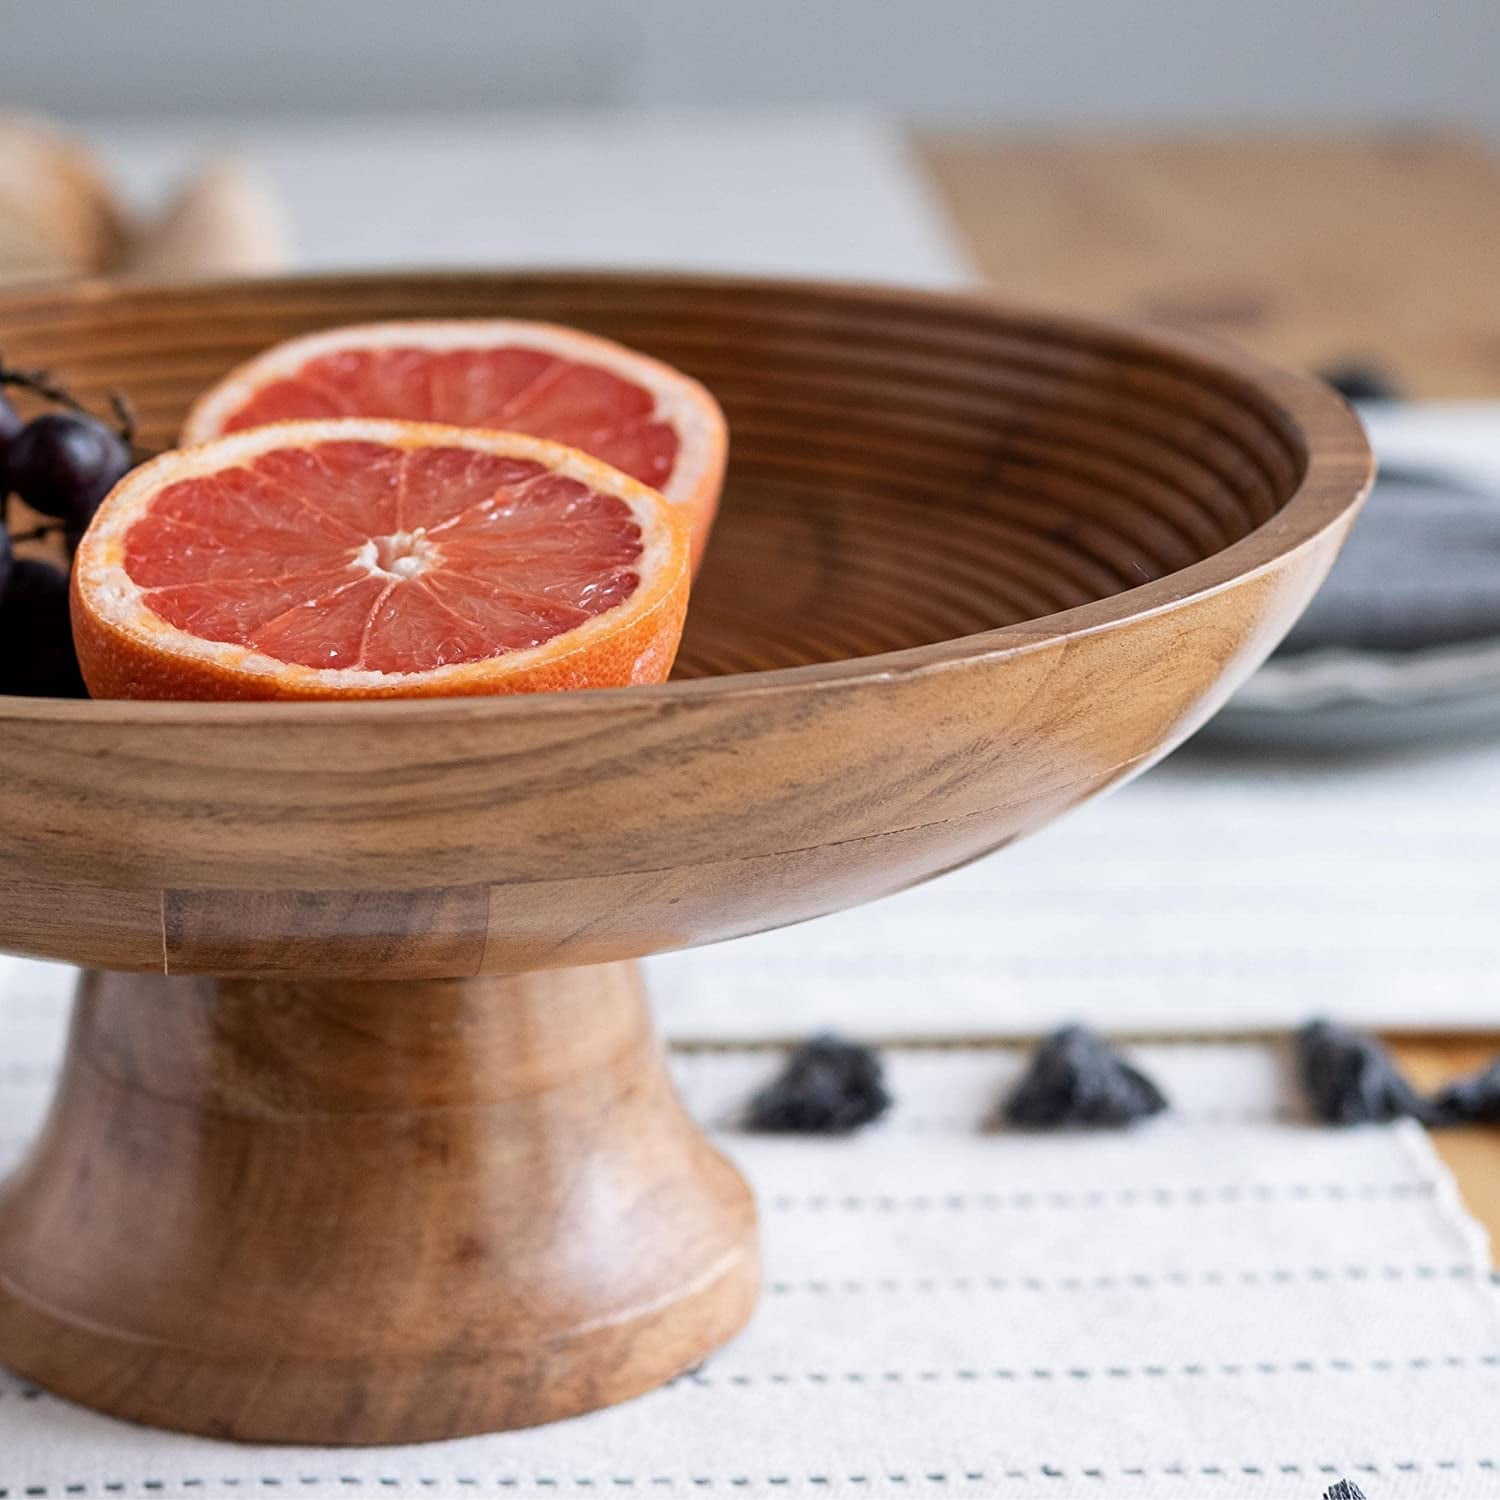 Folkulture Wood Fruit Bowl or Decorative Pedestal Bowl for Table